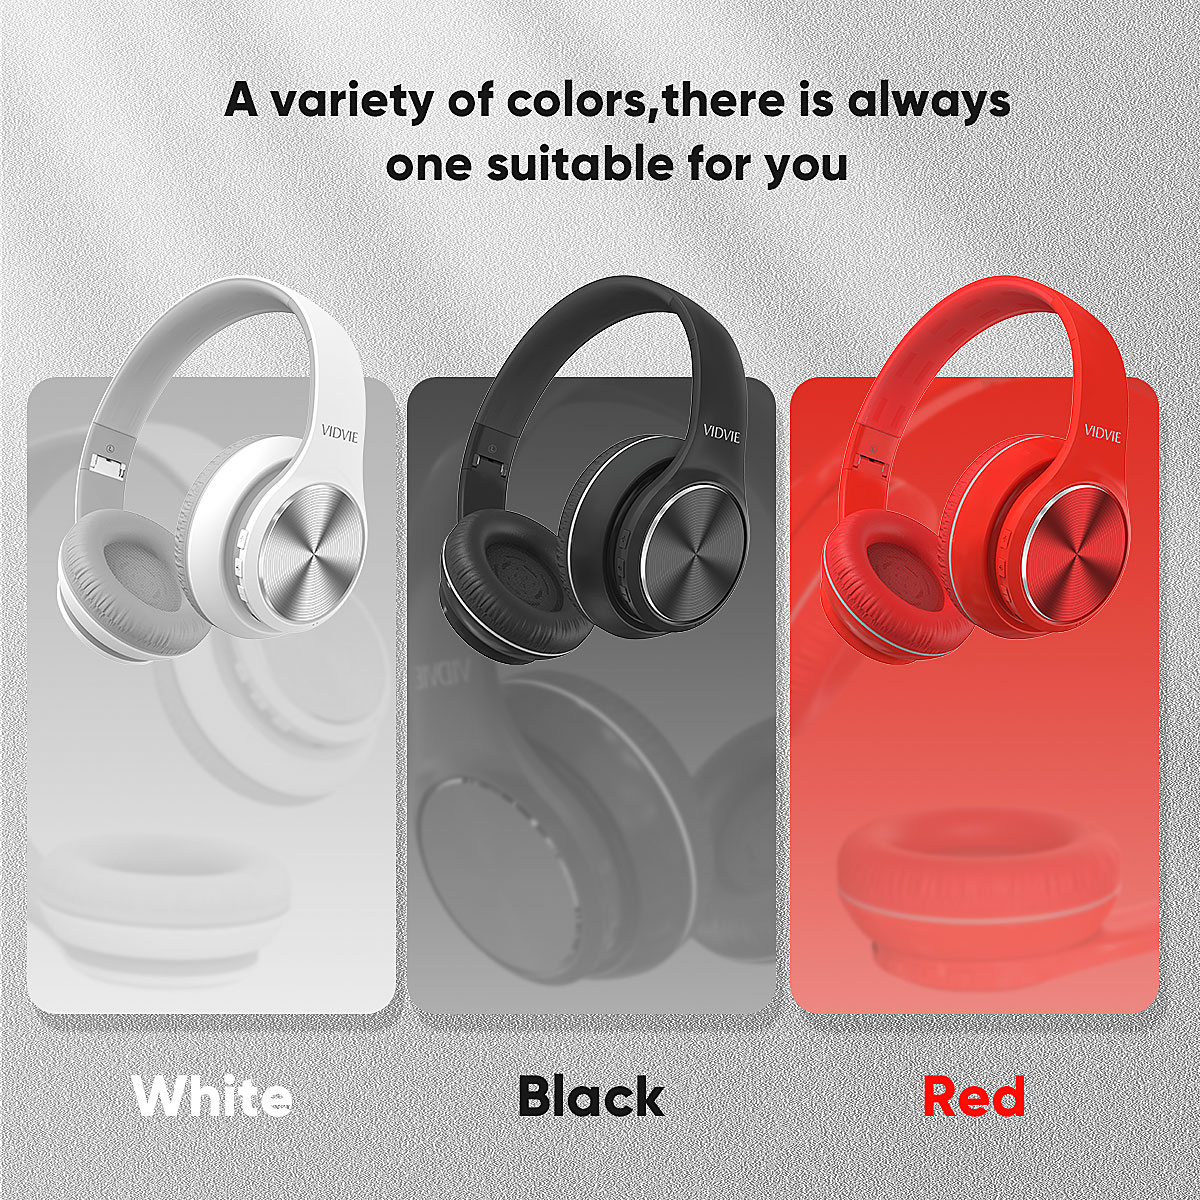 VIDVIE BBH2108 Casque Bluetooth Sans Fil, le choix idéal pour une expérience audio sans compromis | Couleur Blanc